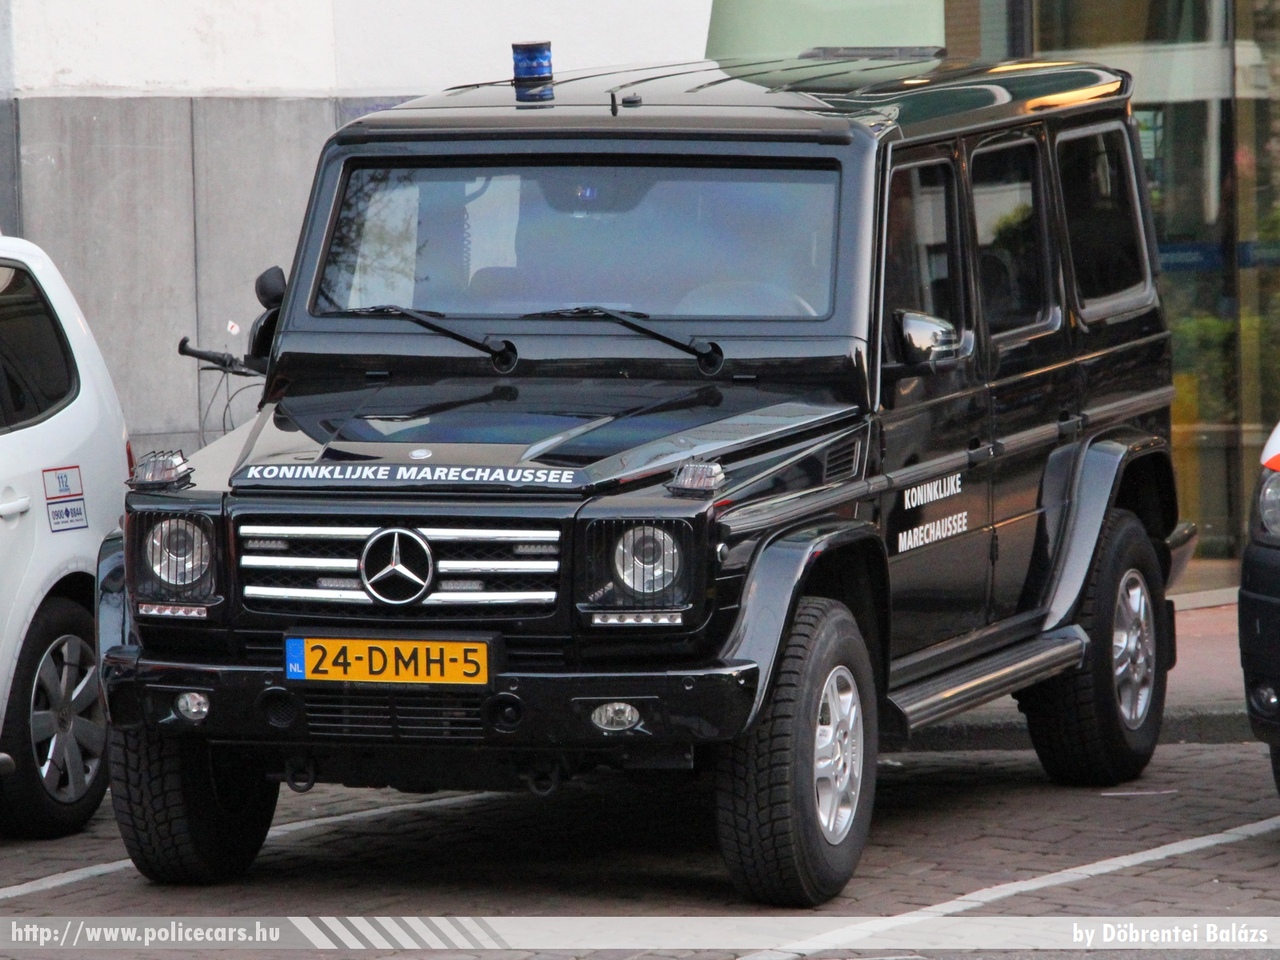 Mercedes G, fotó: Döbrentei Balázs
Keywords: rendőr rendőrautó rendőrség Hollandia holland police policecar Netherlands dutch